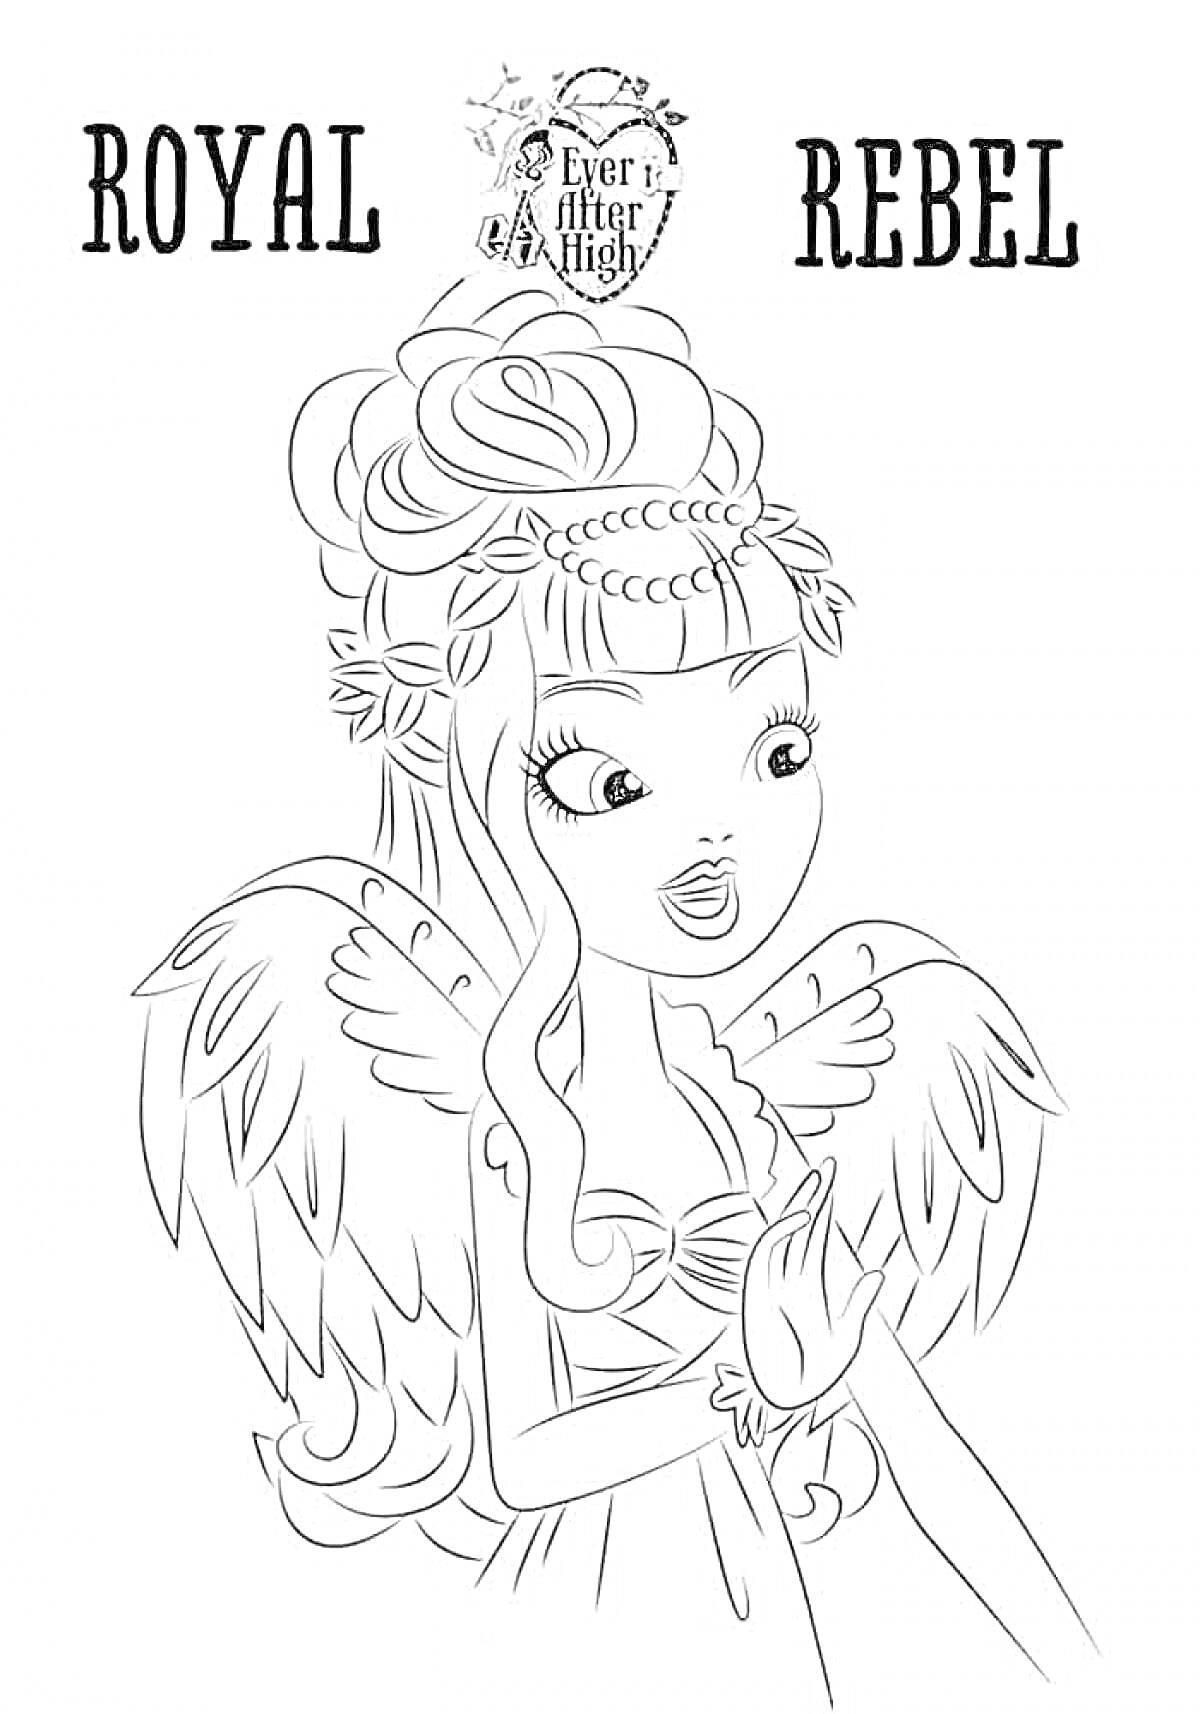 Кукла Эвер Афтер Хай с крыльями, украшение на голове, платье, текст Royal Rebel и эмблема Ever After High.